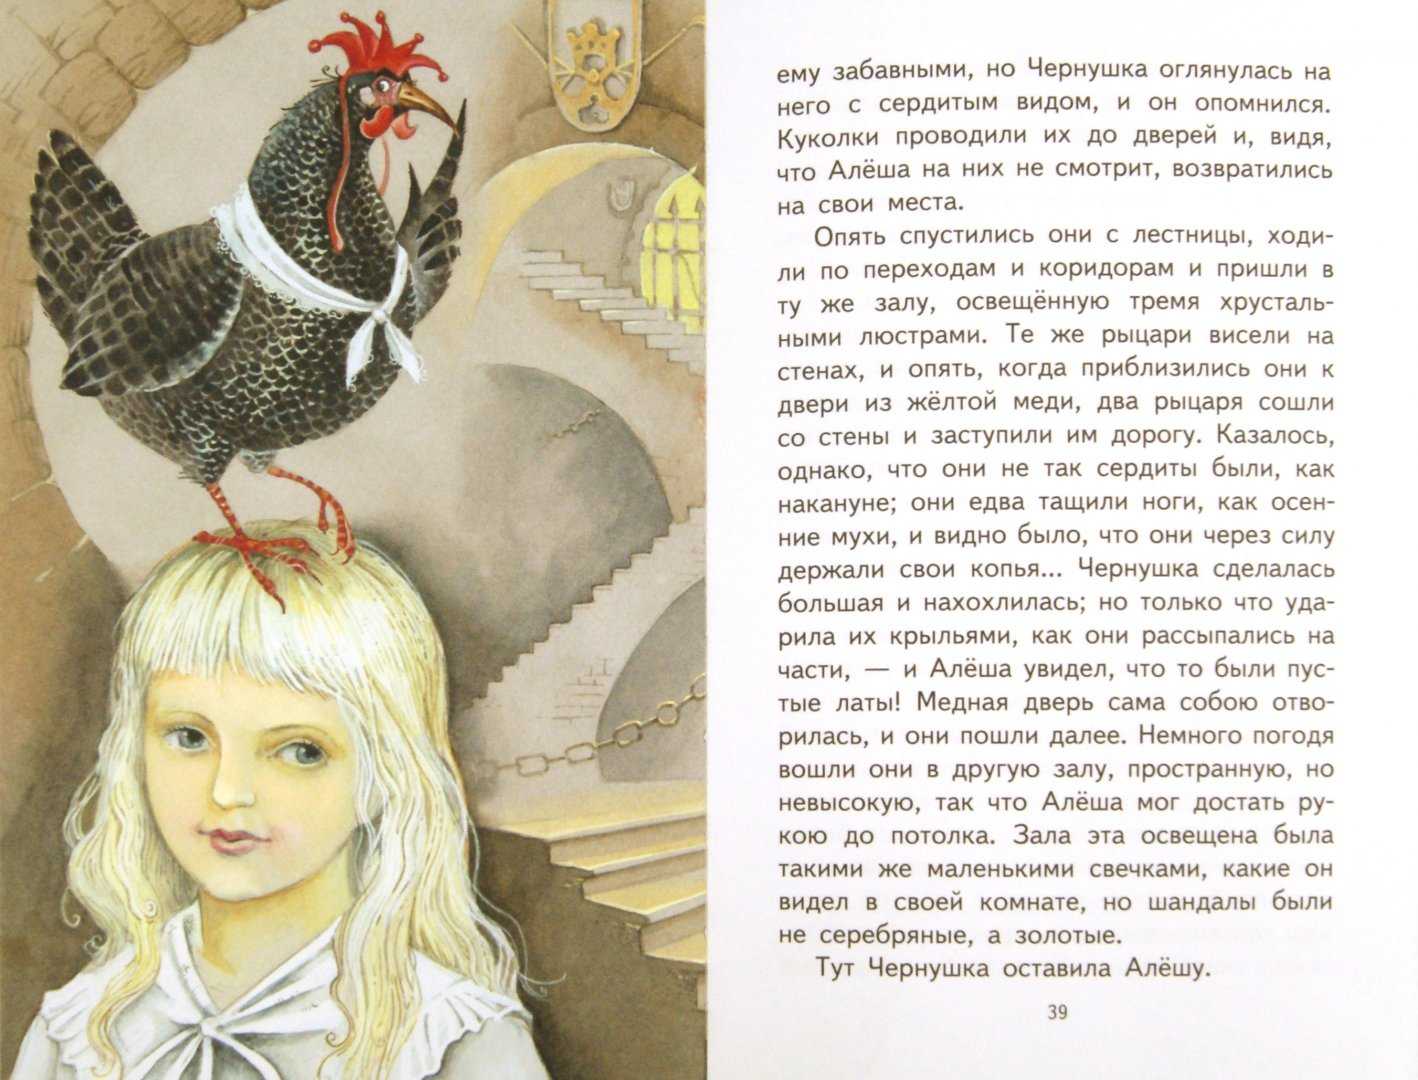 Антония Погорельского черная курица